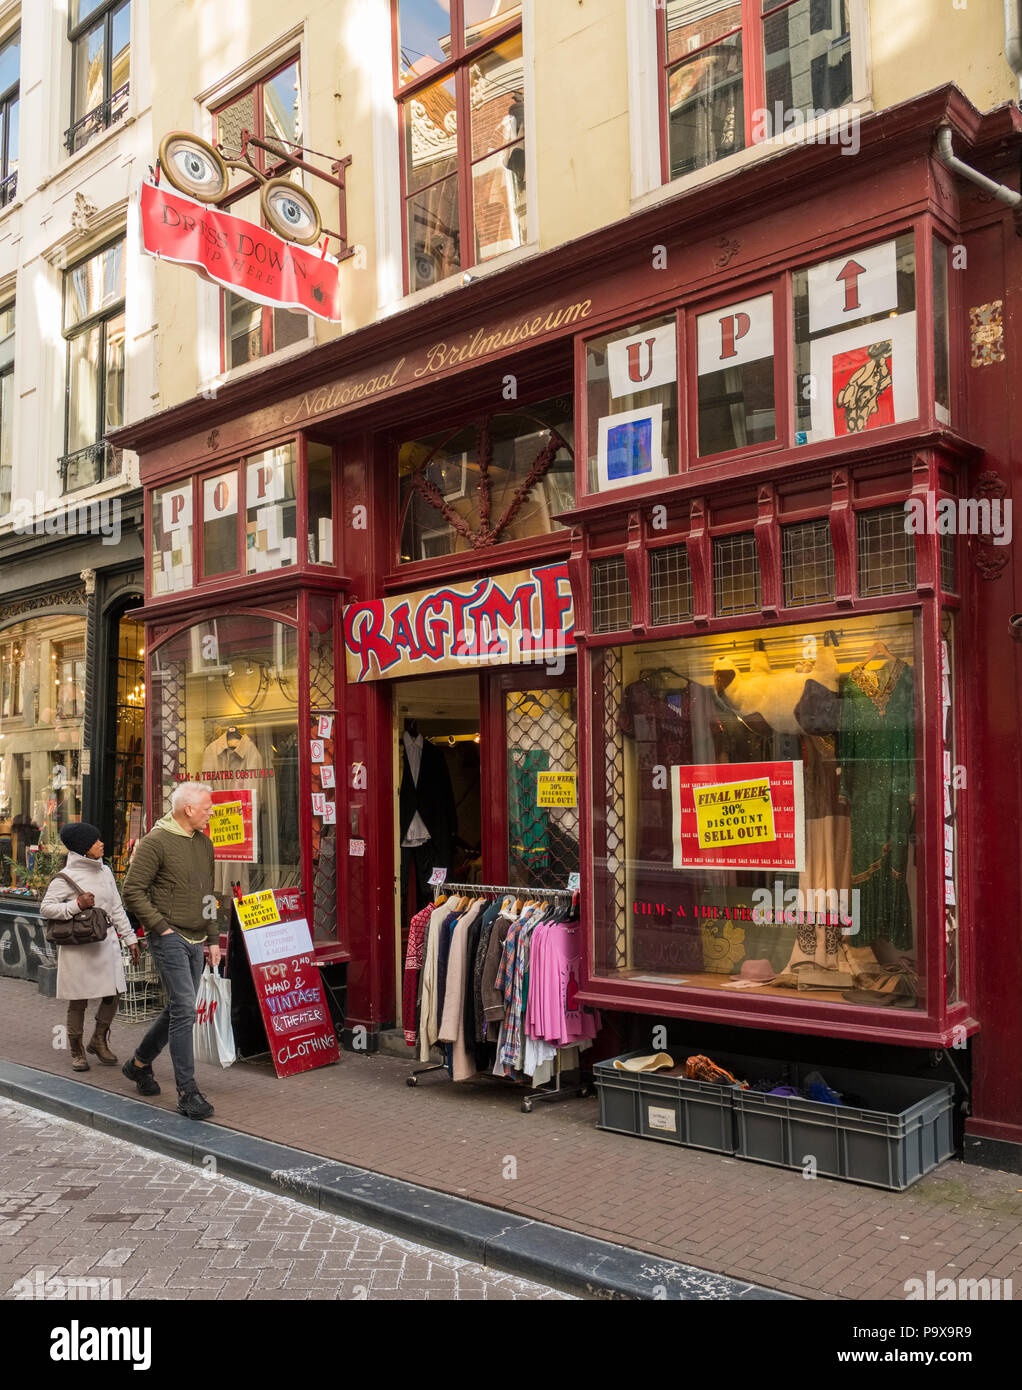 Ragtime, une boutique vintage store dans le quartier branché de 9 Streets area Amsterdam, Pays-Bas, Hollande, Europe Banque D'Images